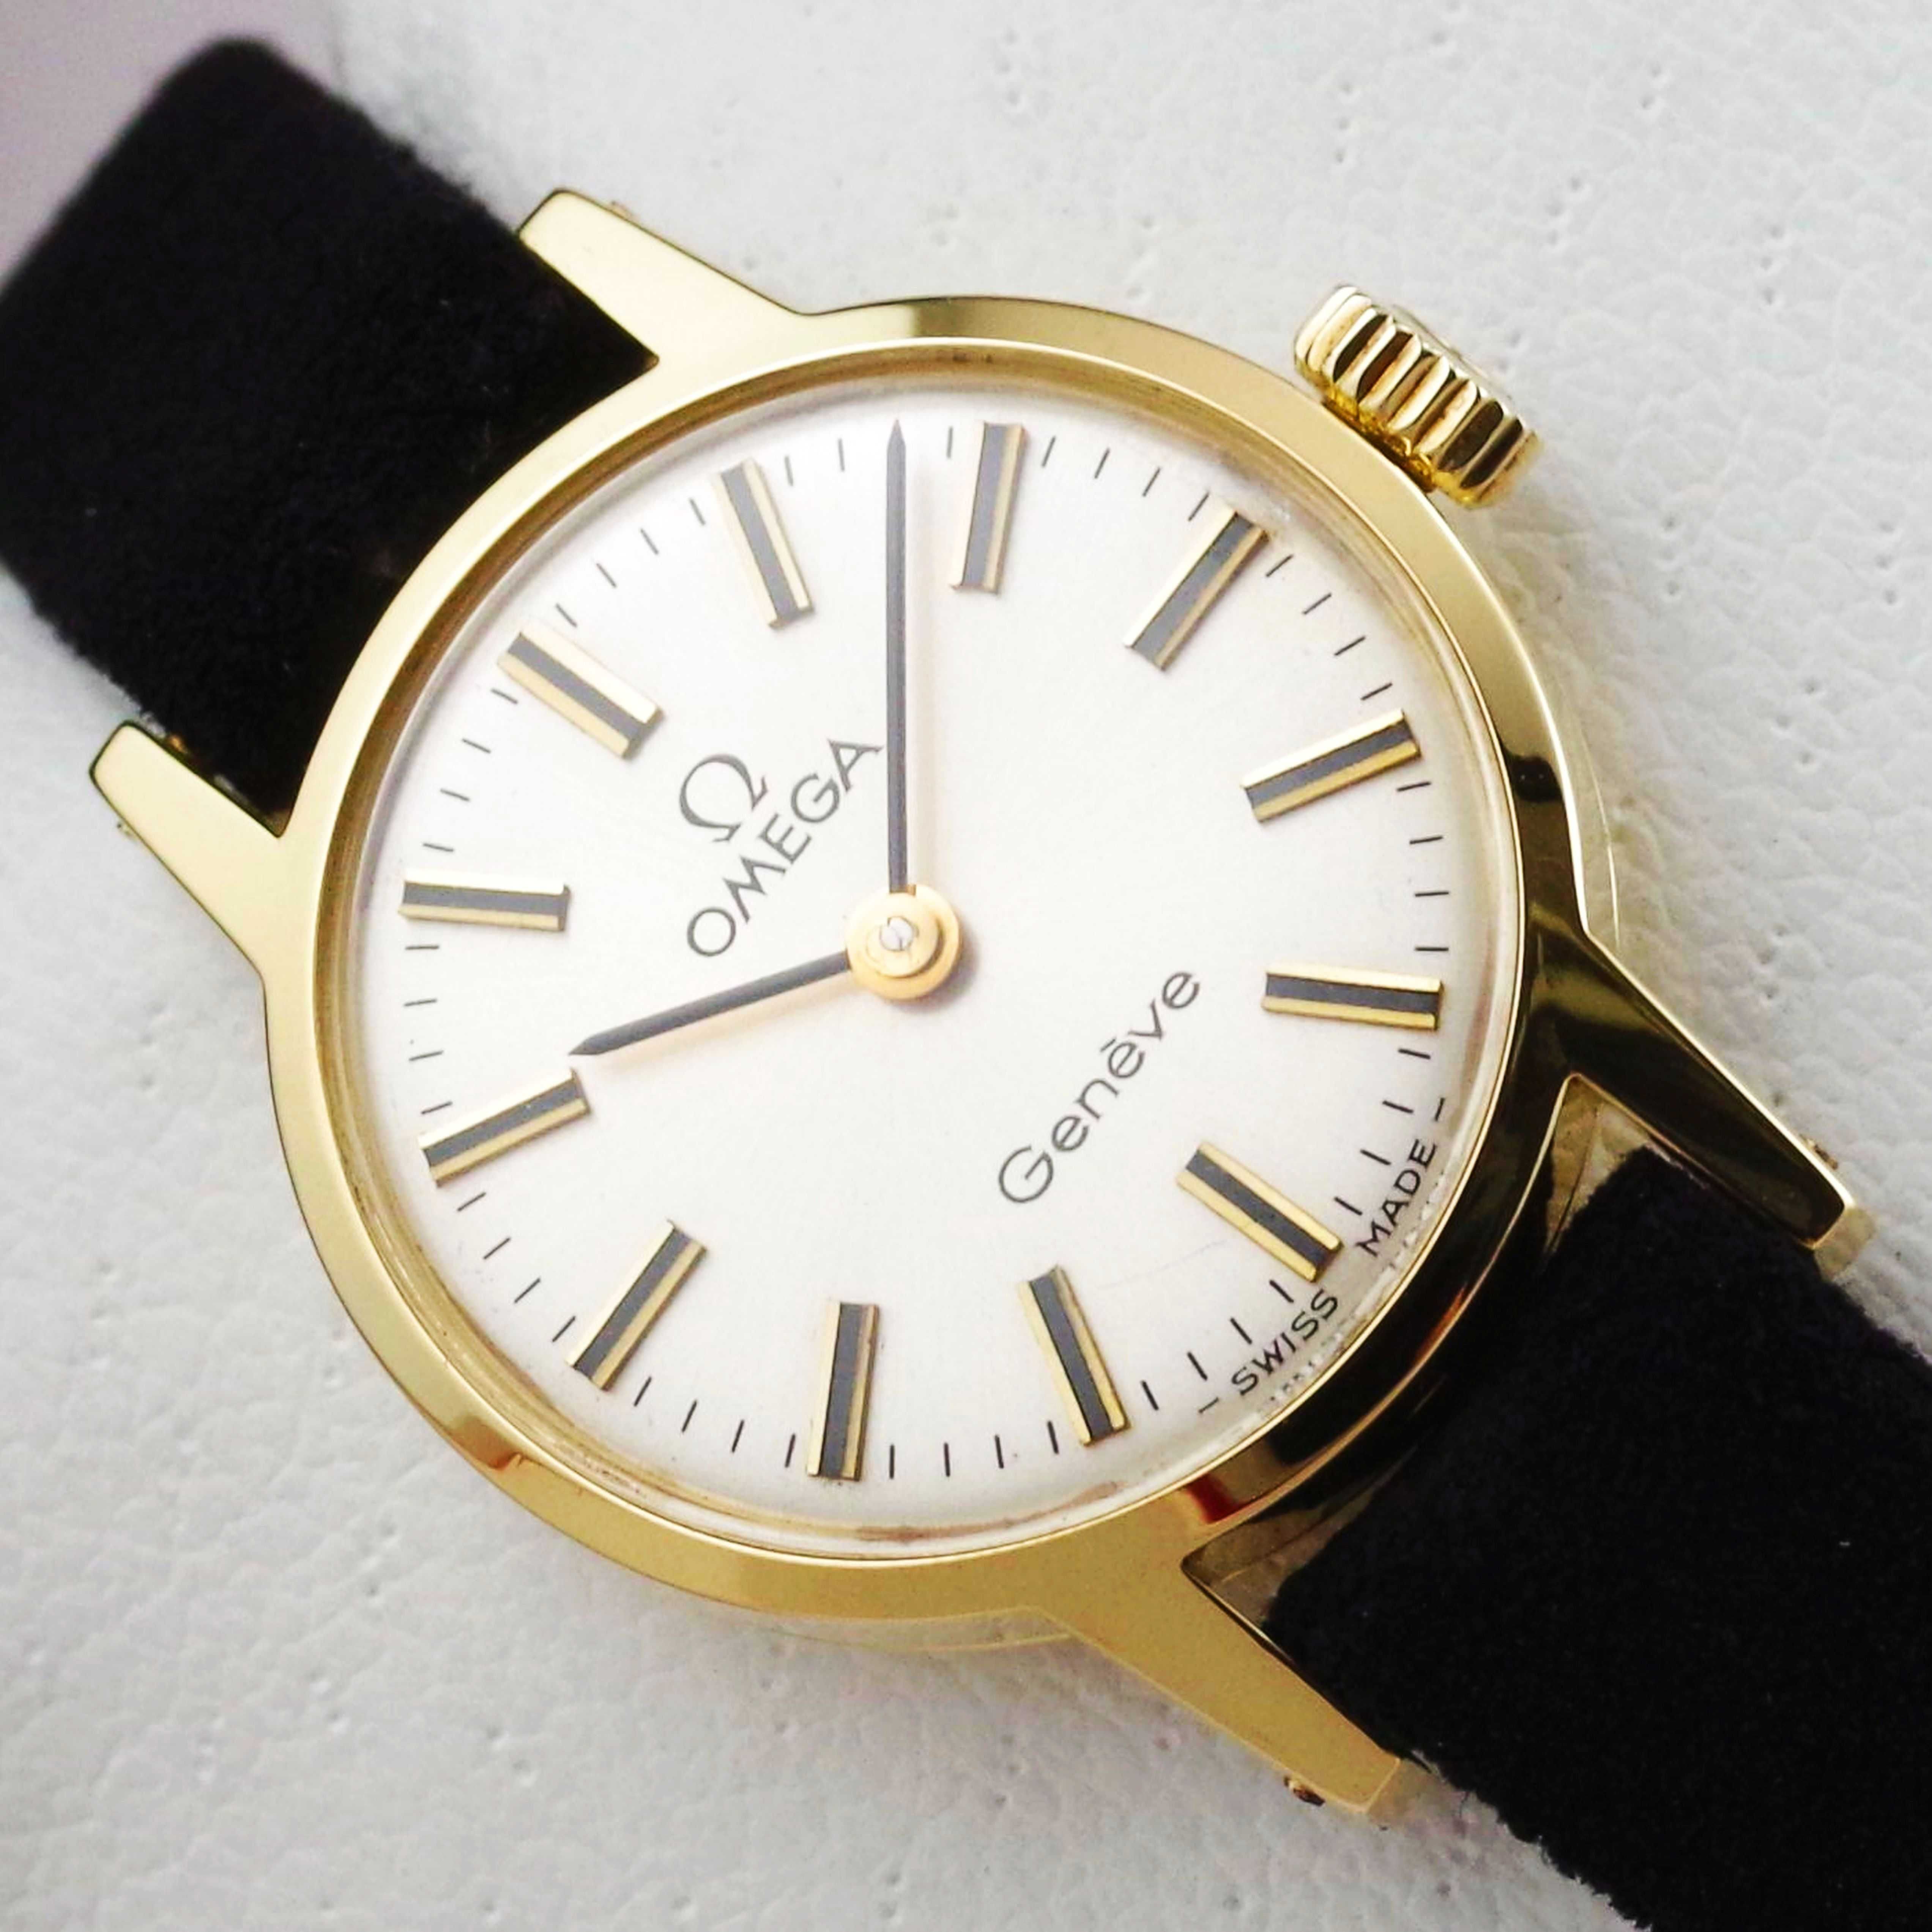 OMEGA zegarek damski VINTAGE 1972 kaliber 625 lite ZŁOTO 18K / 750